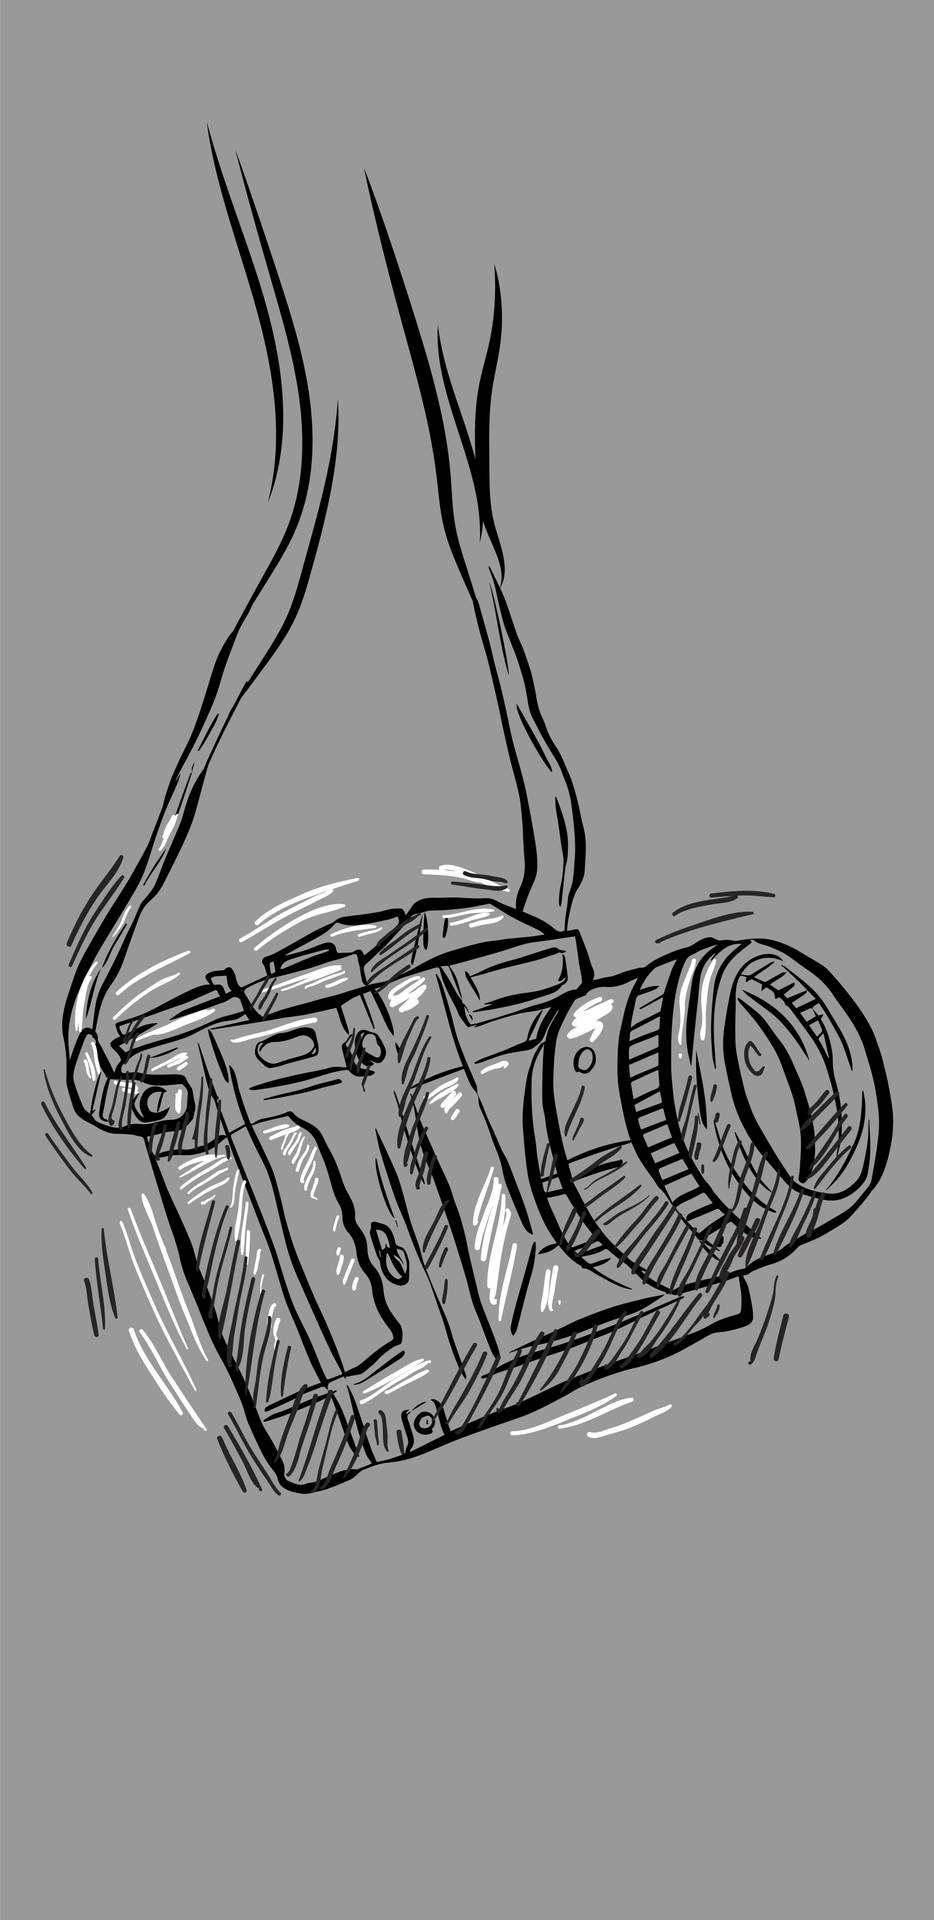 Pencil Sketch Of Boy With A Camera  DesiPainterscom